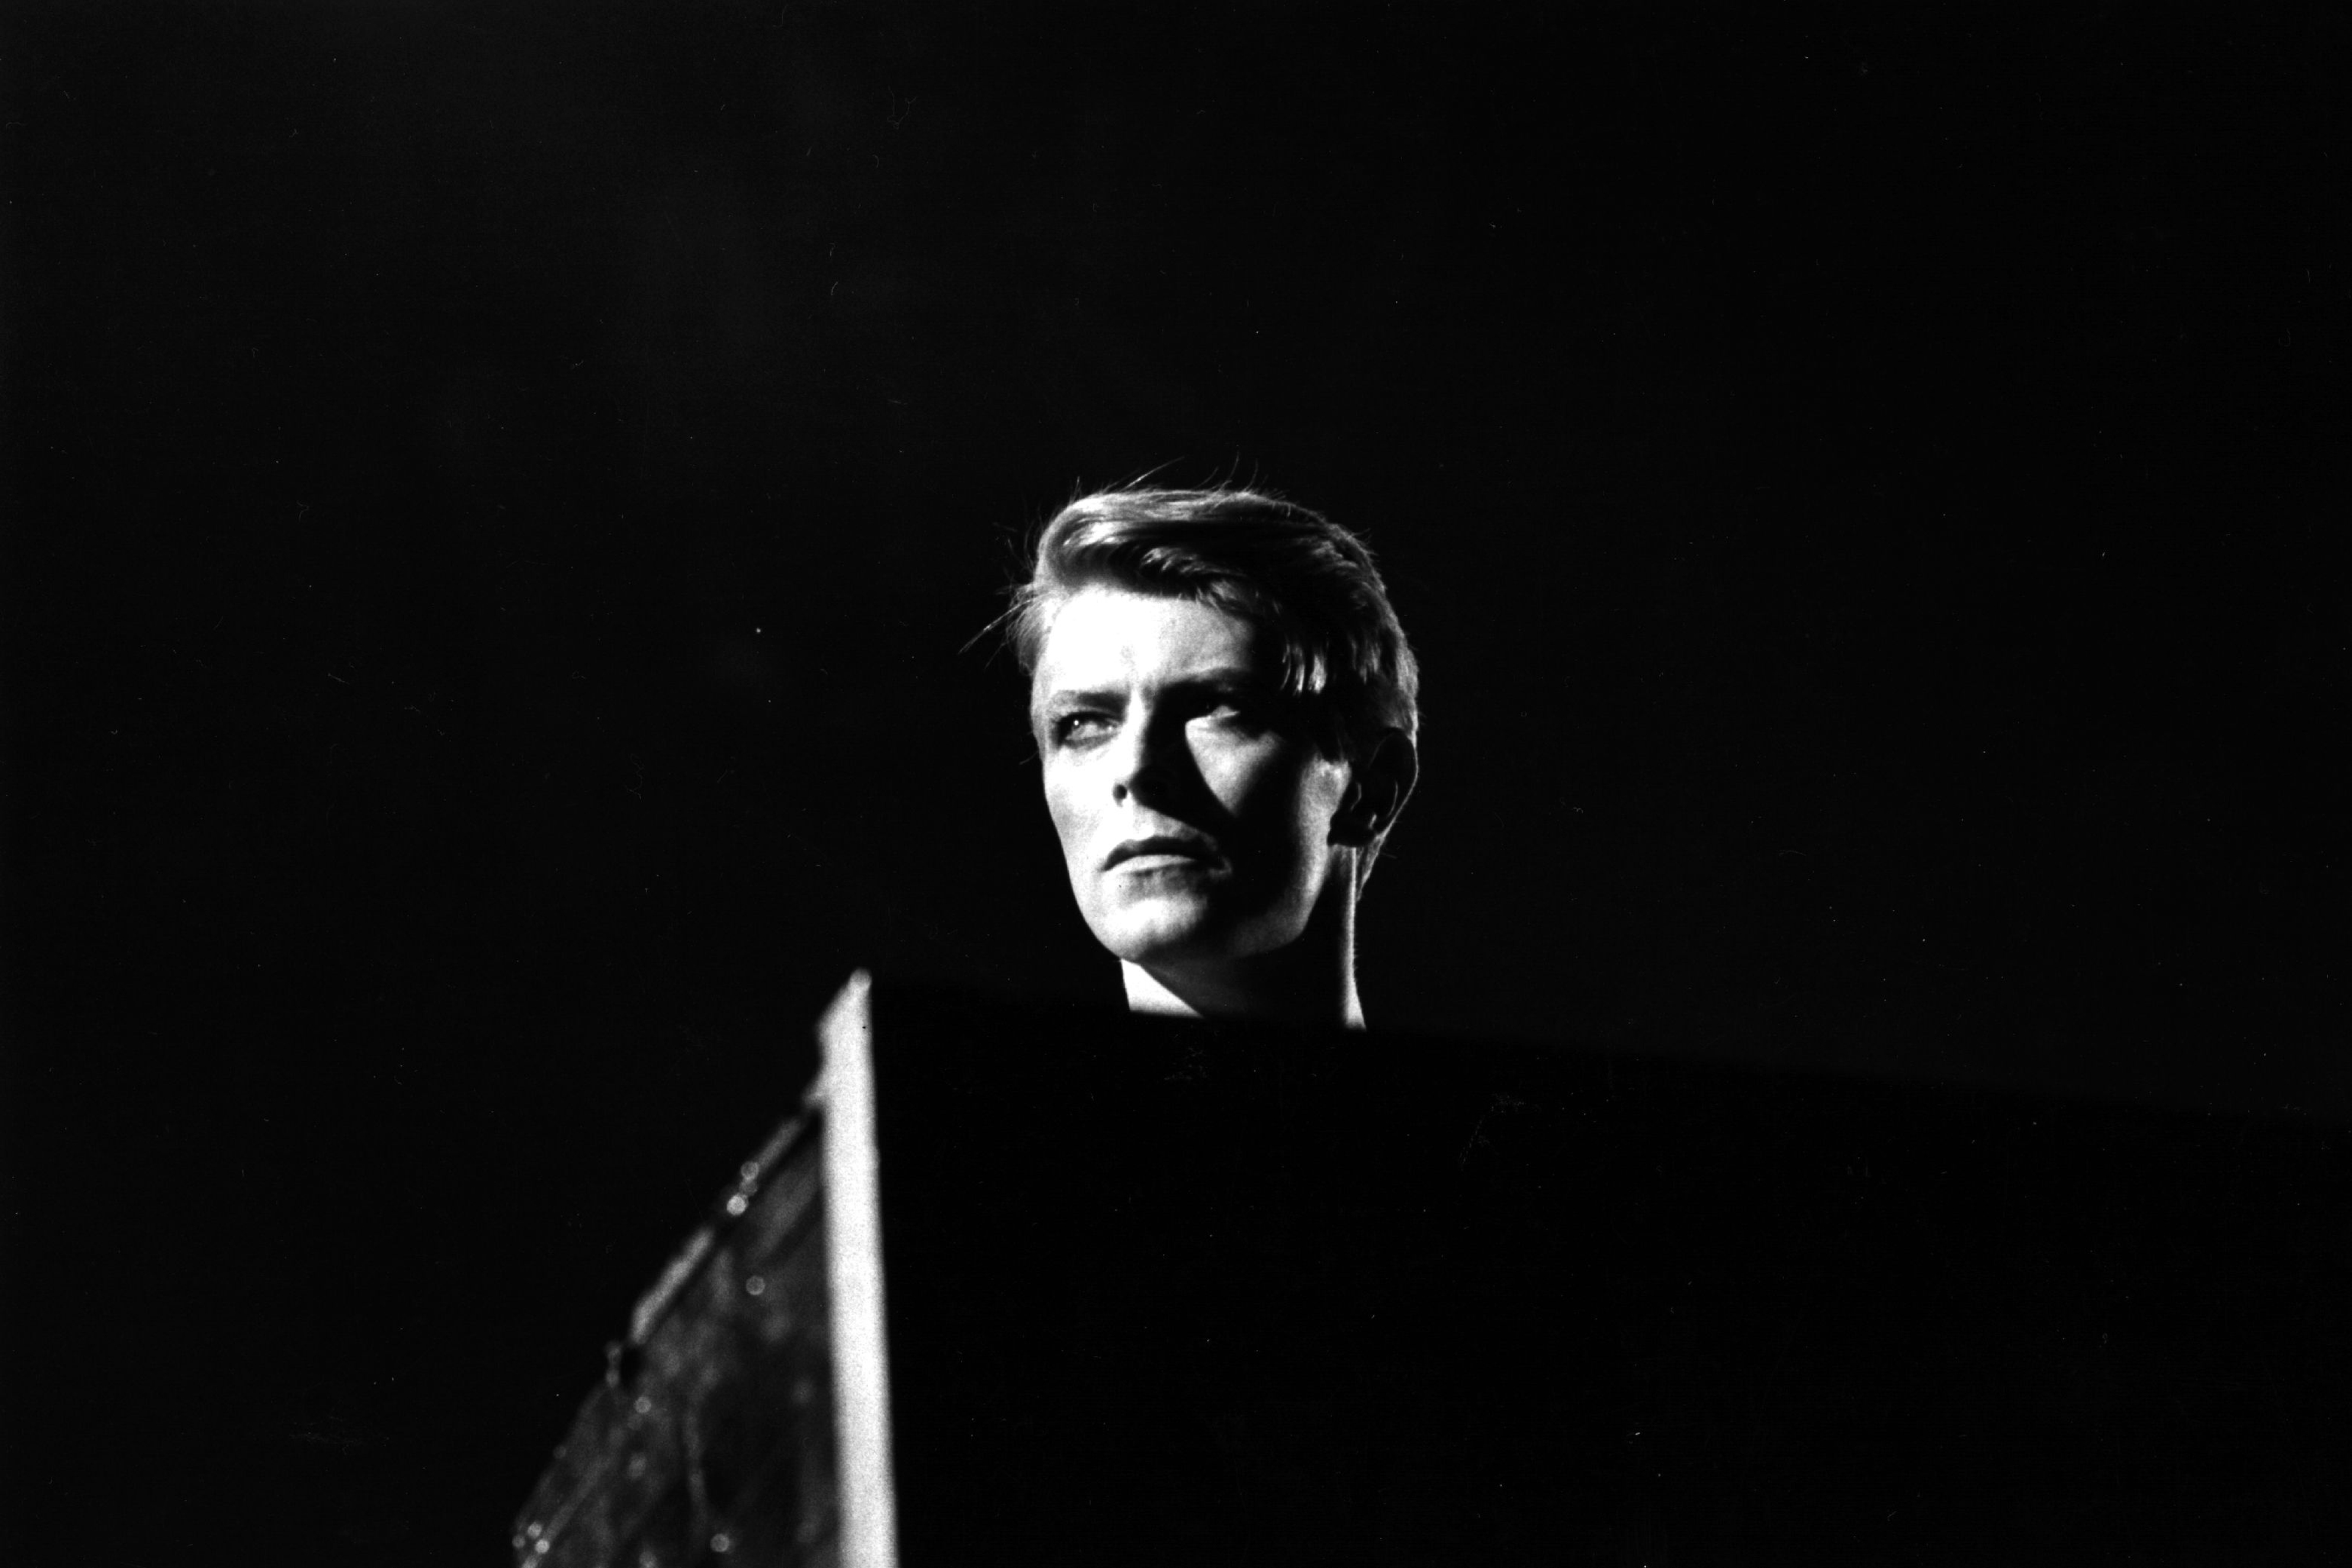 Der neuen App zu Ehren David Bowies leiht Gary Oldman seine Stimme